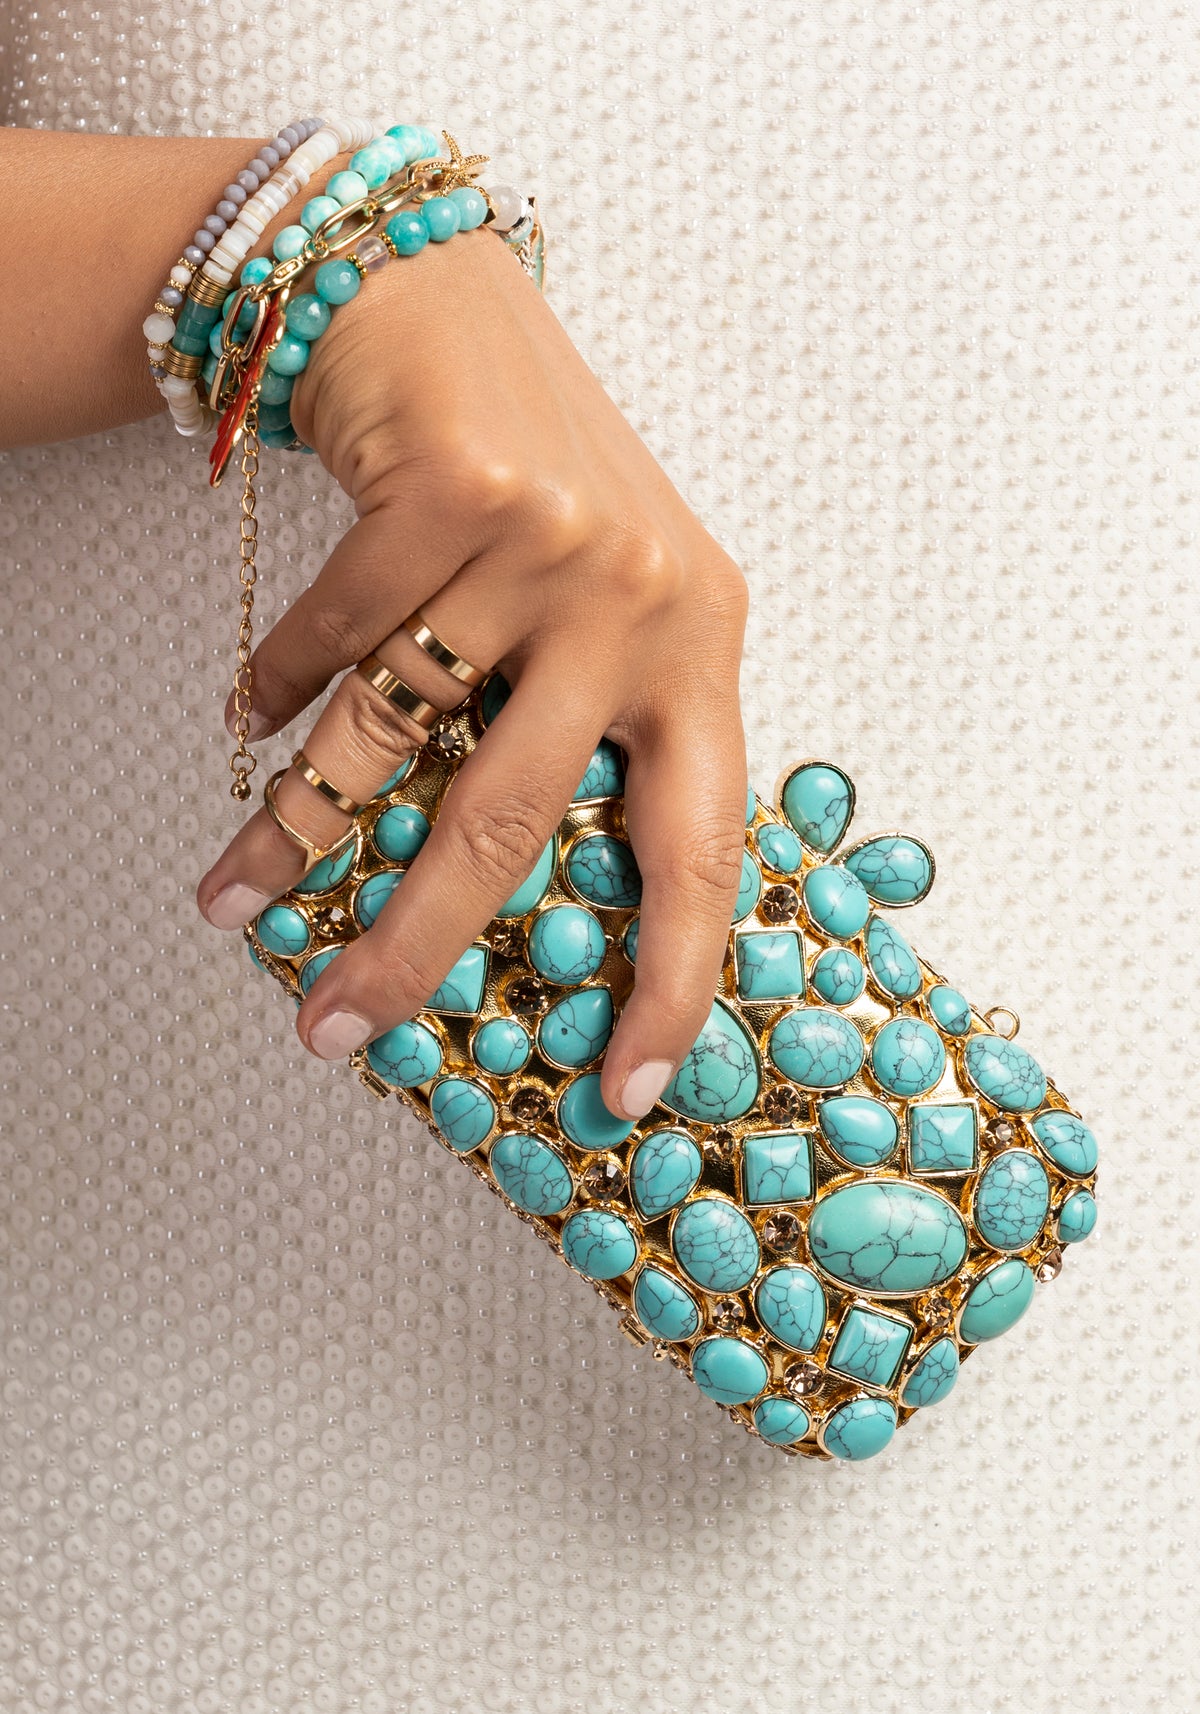 Torquoise luxury handbag